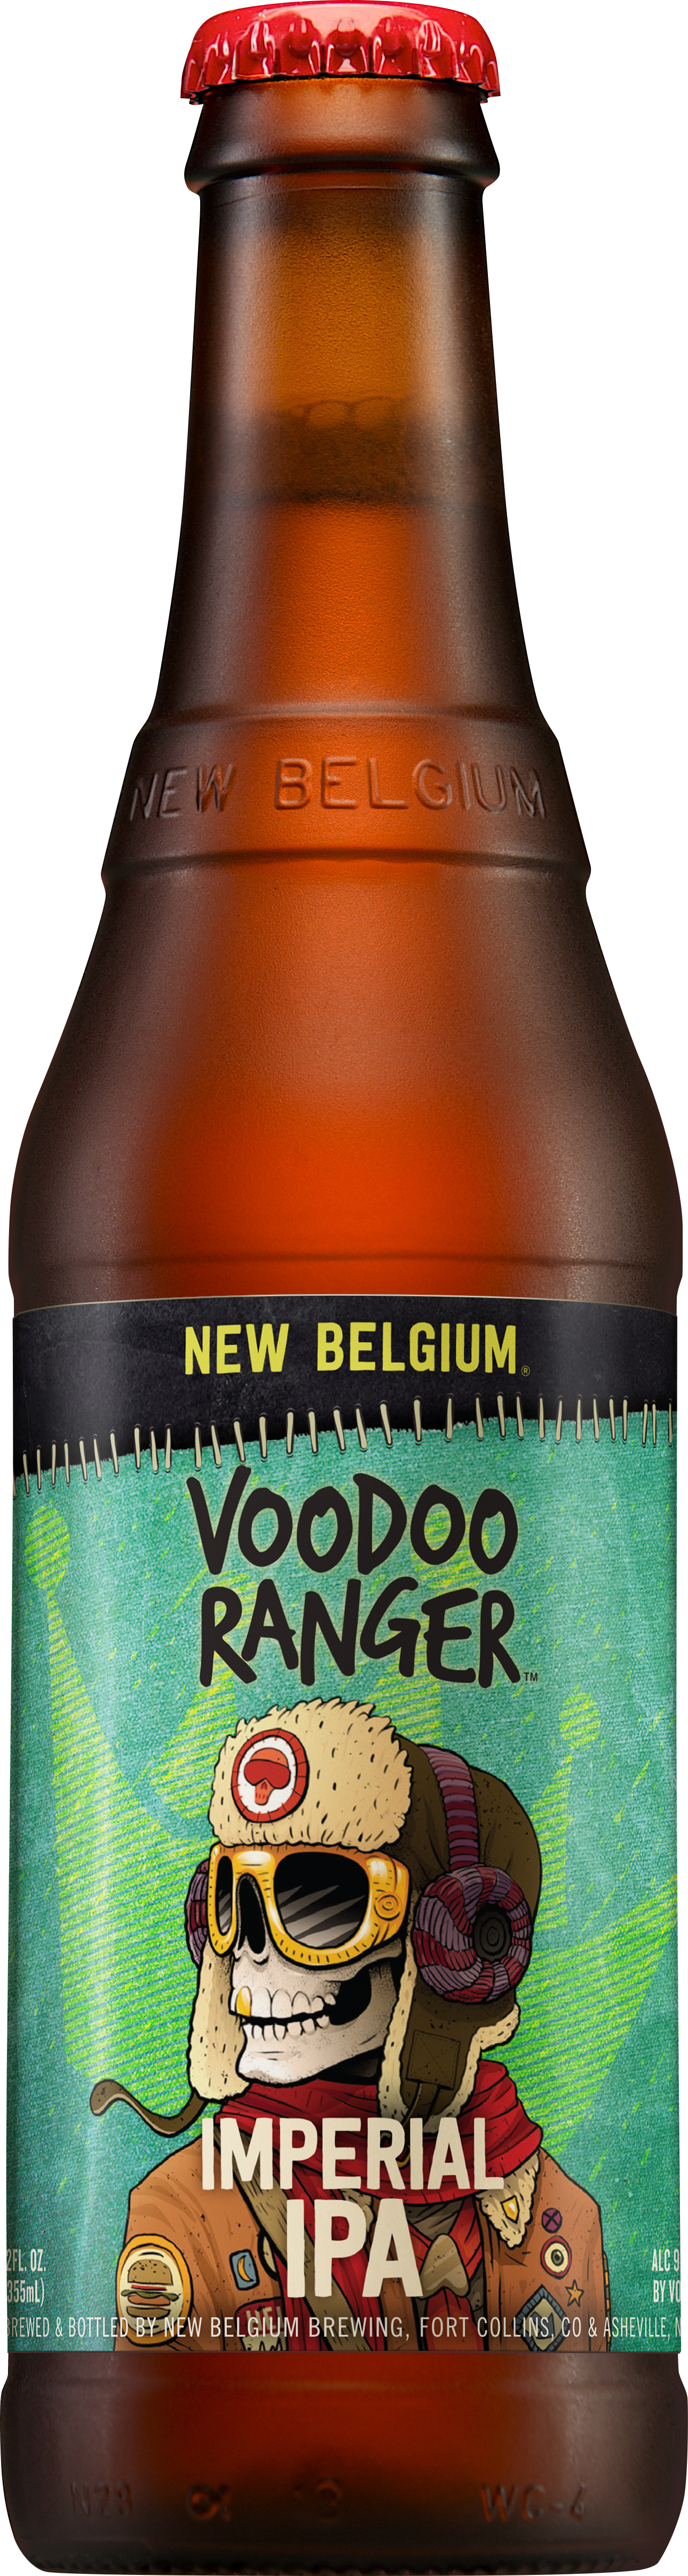 new-belgium-voodoo_ranger_imperial_ipa_12oz_bottle-jpg